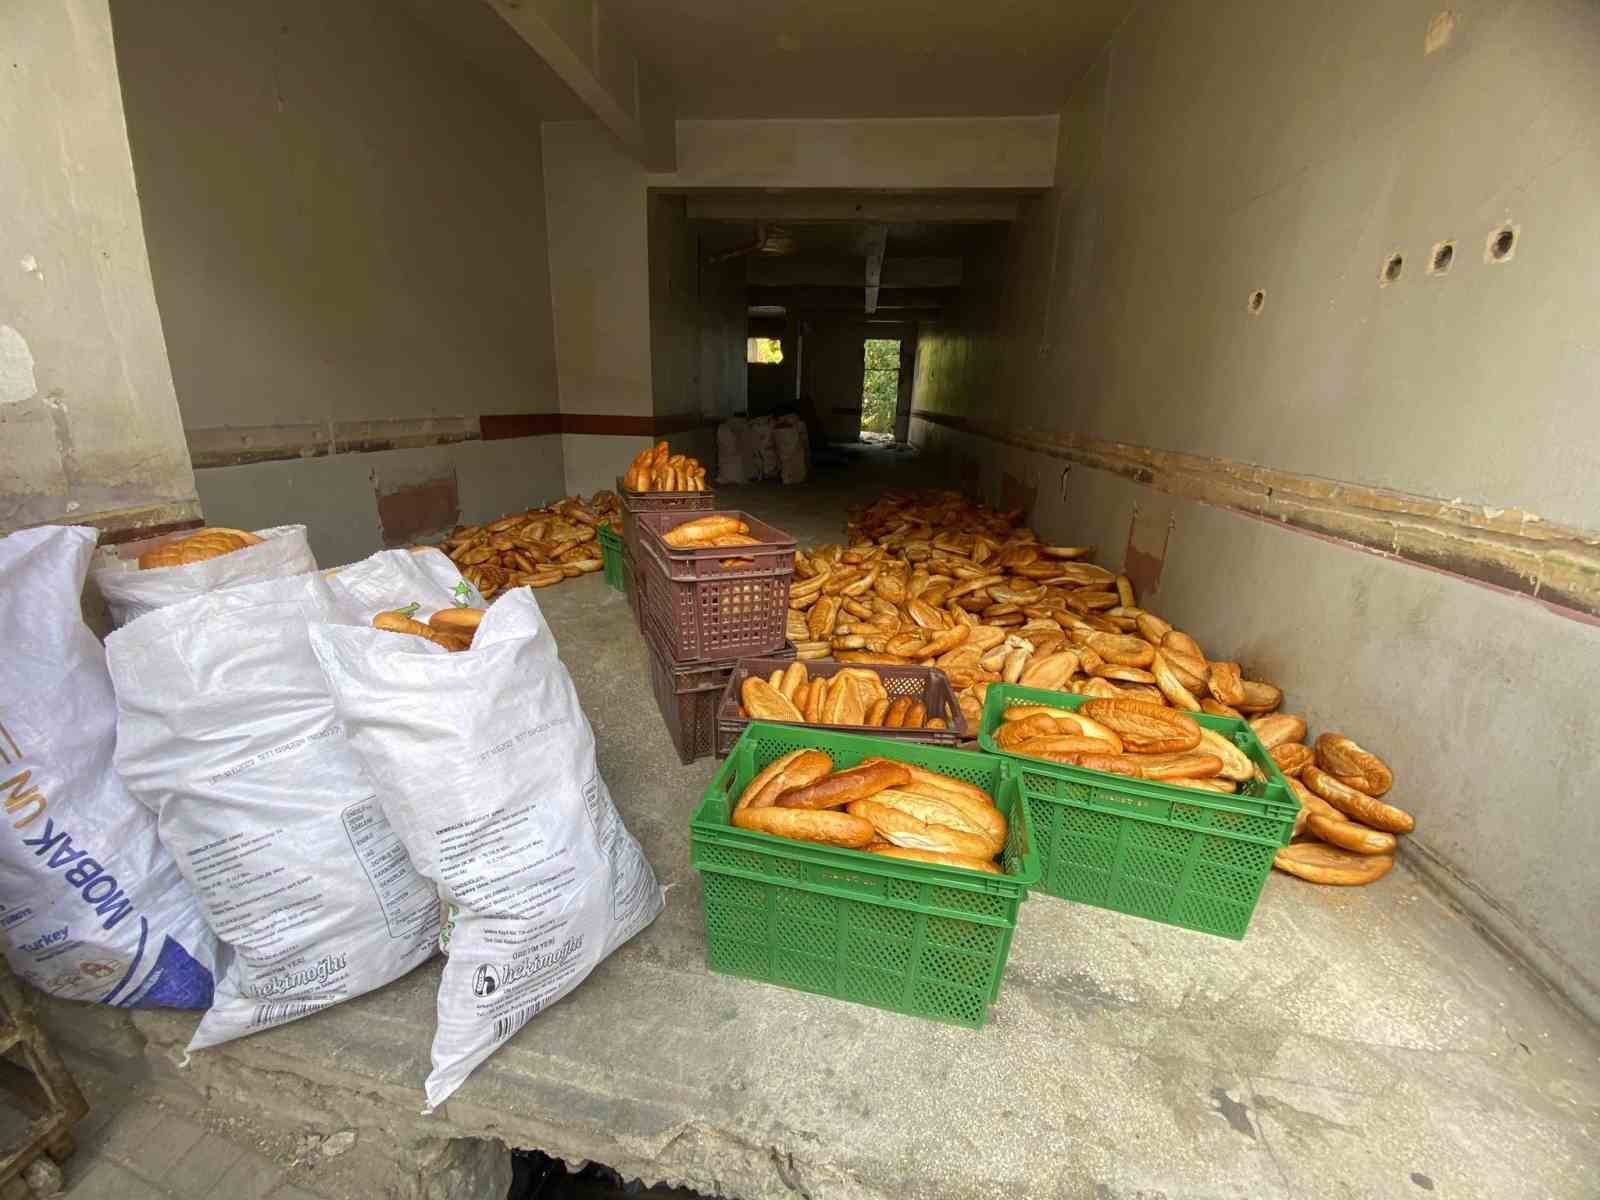 Yüzlerce ekmeği hasarlı binaya atan fırına inceleme başlatıldı